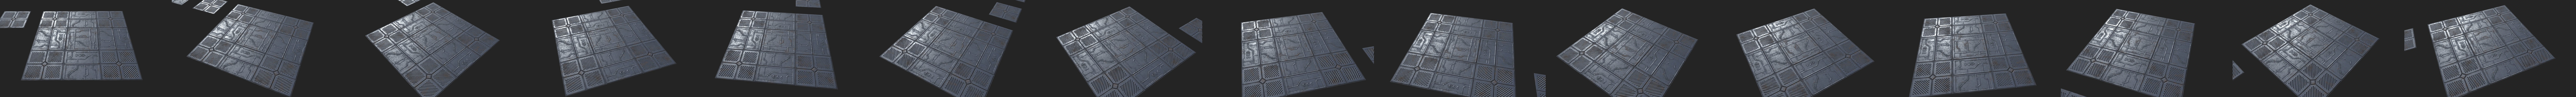 sci fi floor tiles